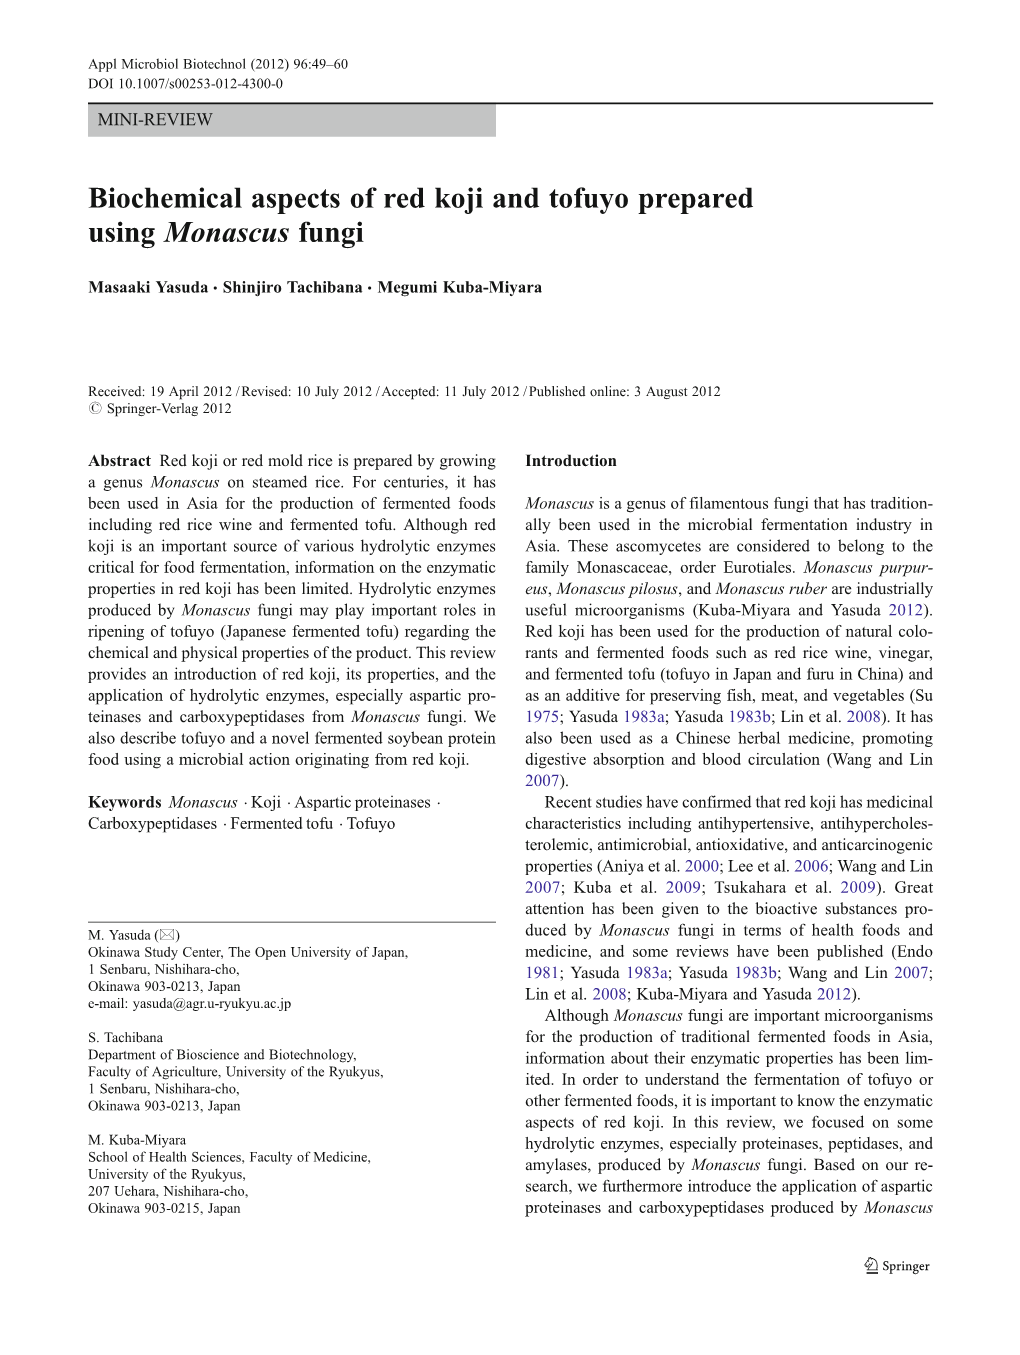 Biochemical Aspects of Red Koji and Tofuyo Prepared Using Monascus Fungi